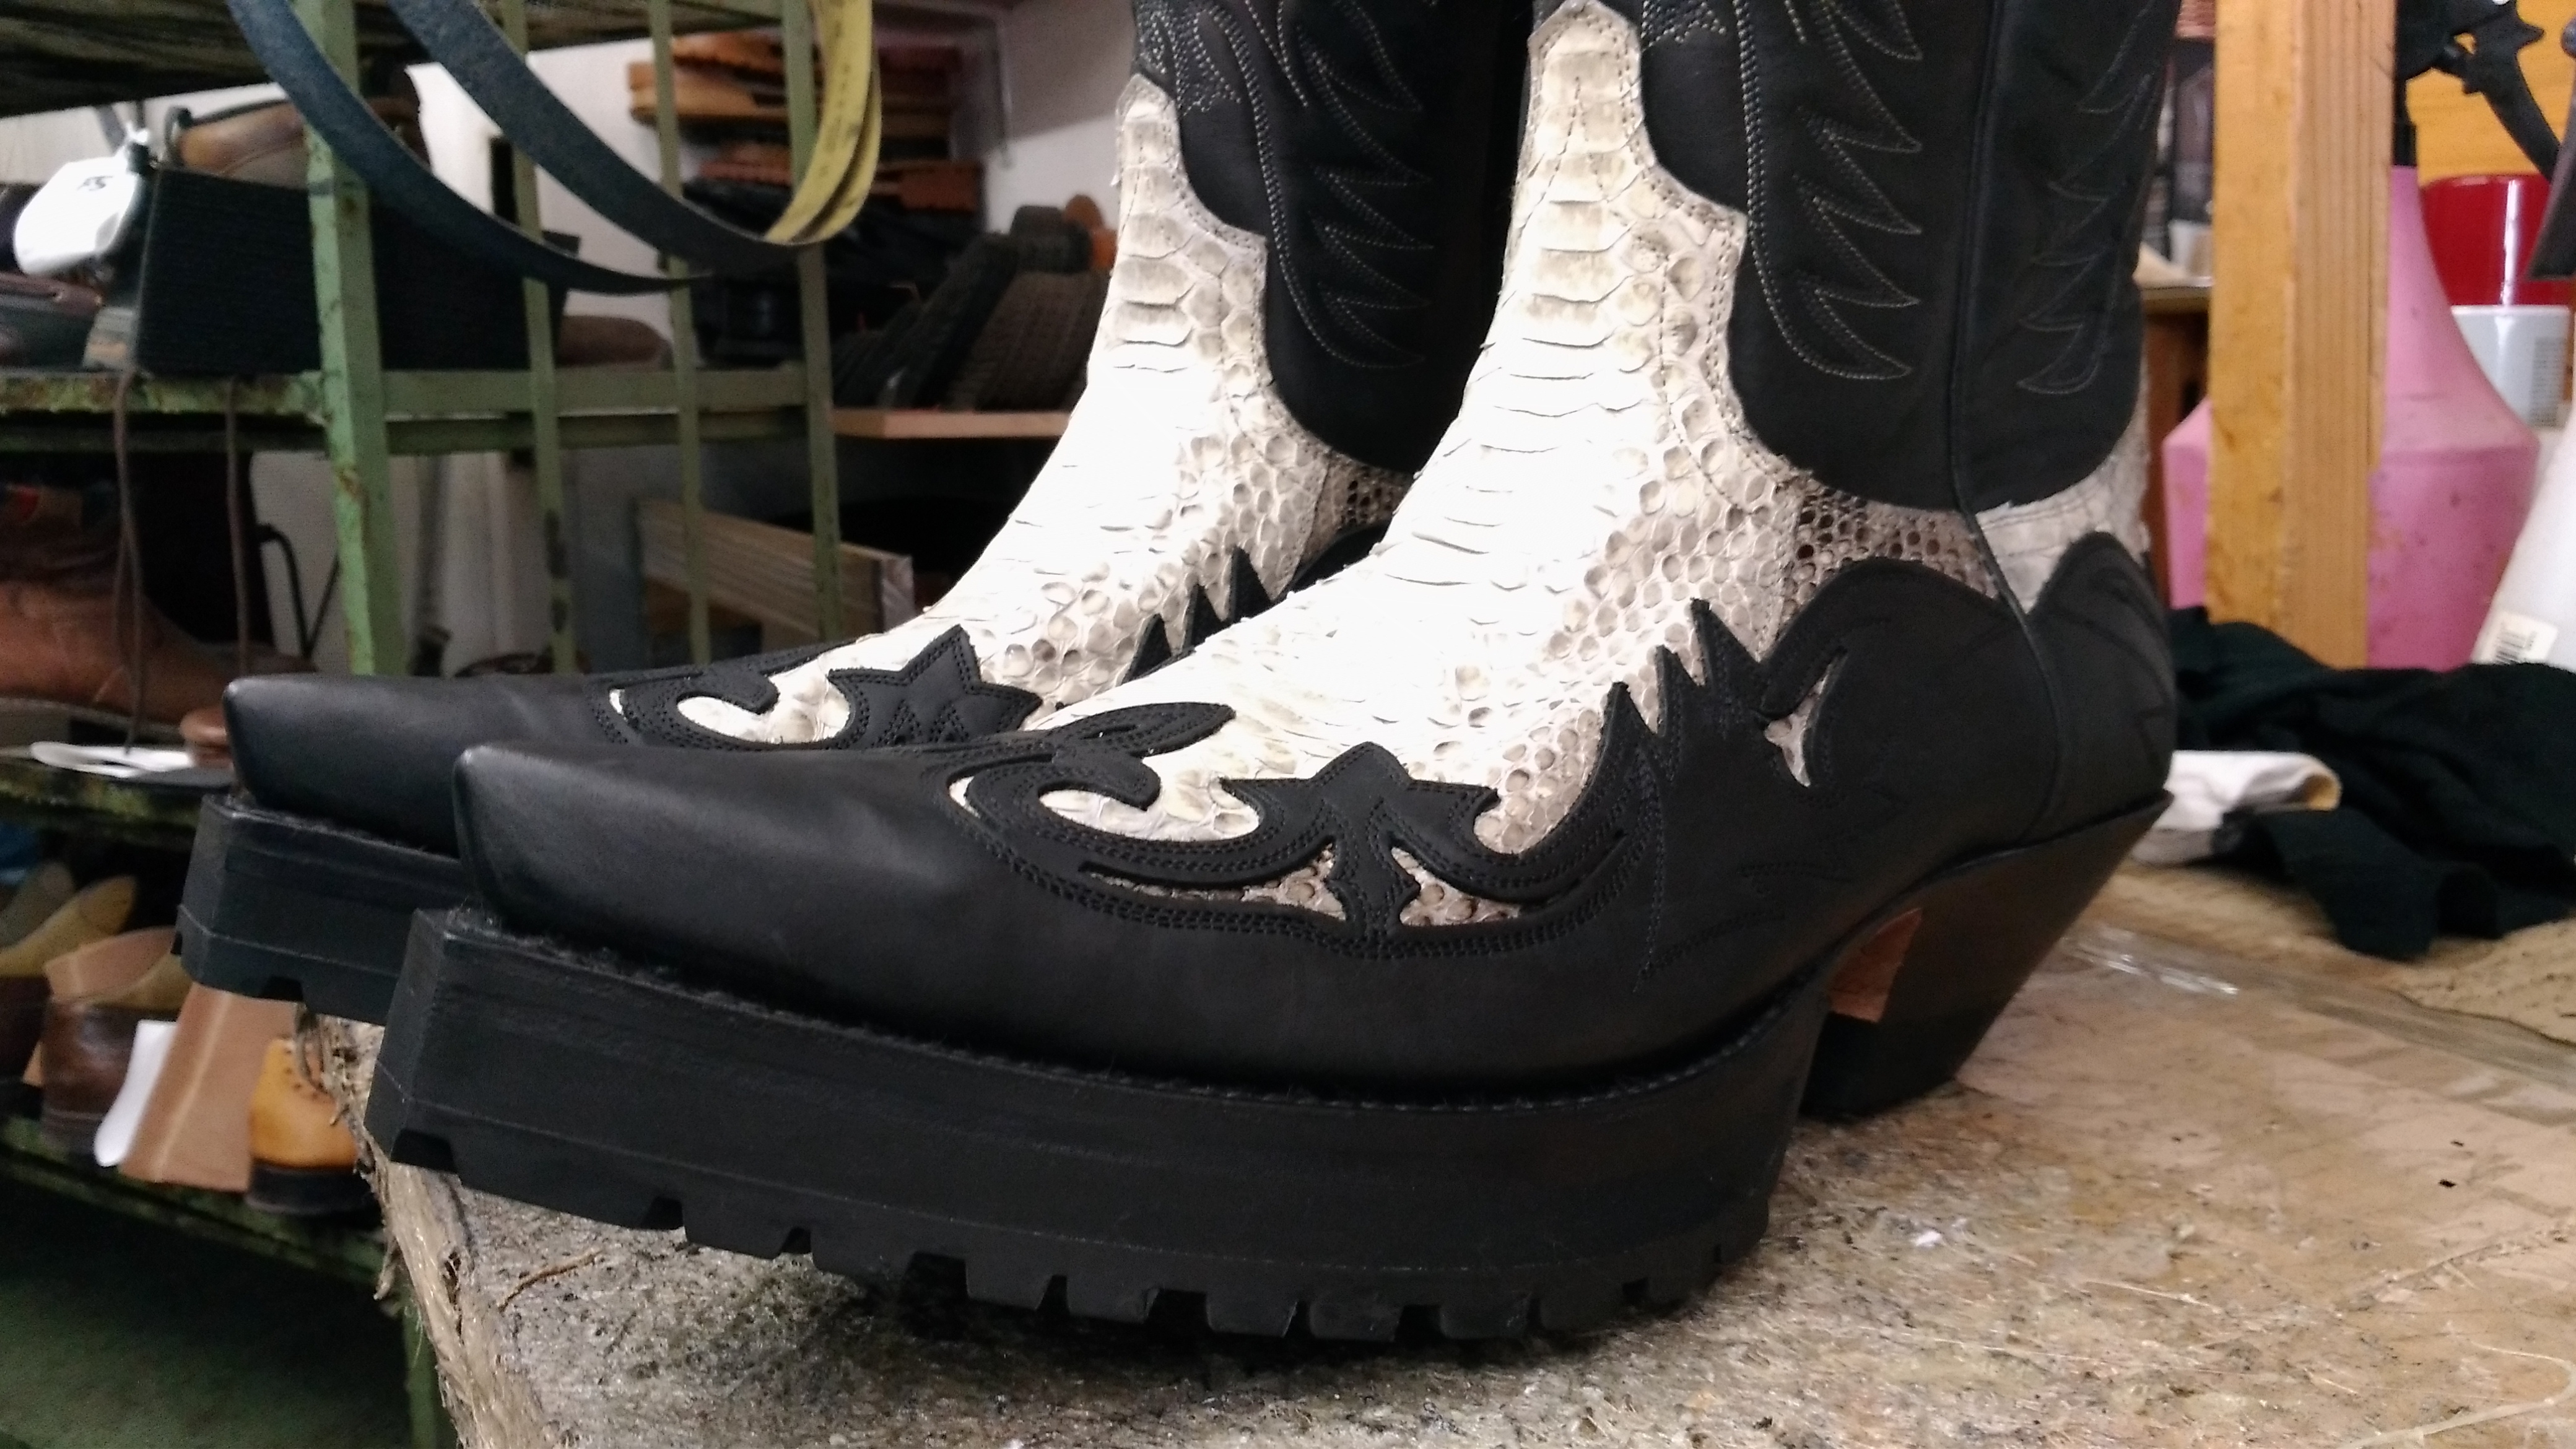 Vibram Profilsohle Higher Boots & – 18 ,voll 18 Heel full – -22mm Fresh Absatz Shoes an & 22mm –